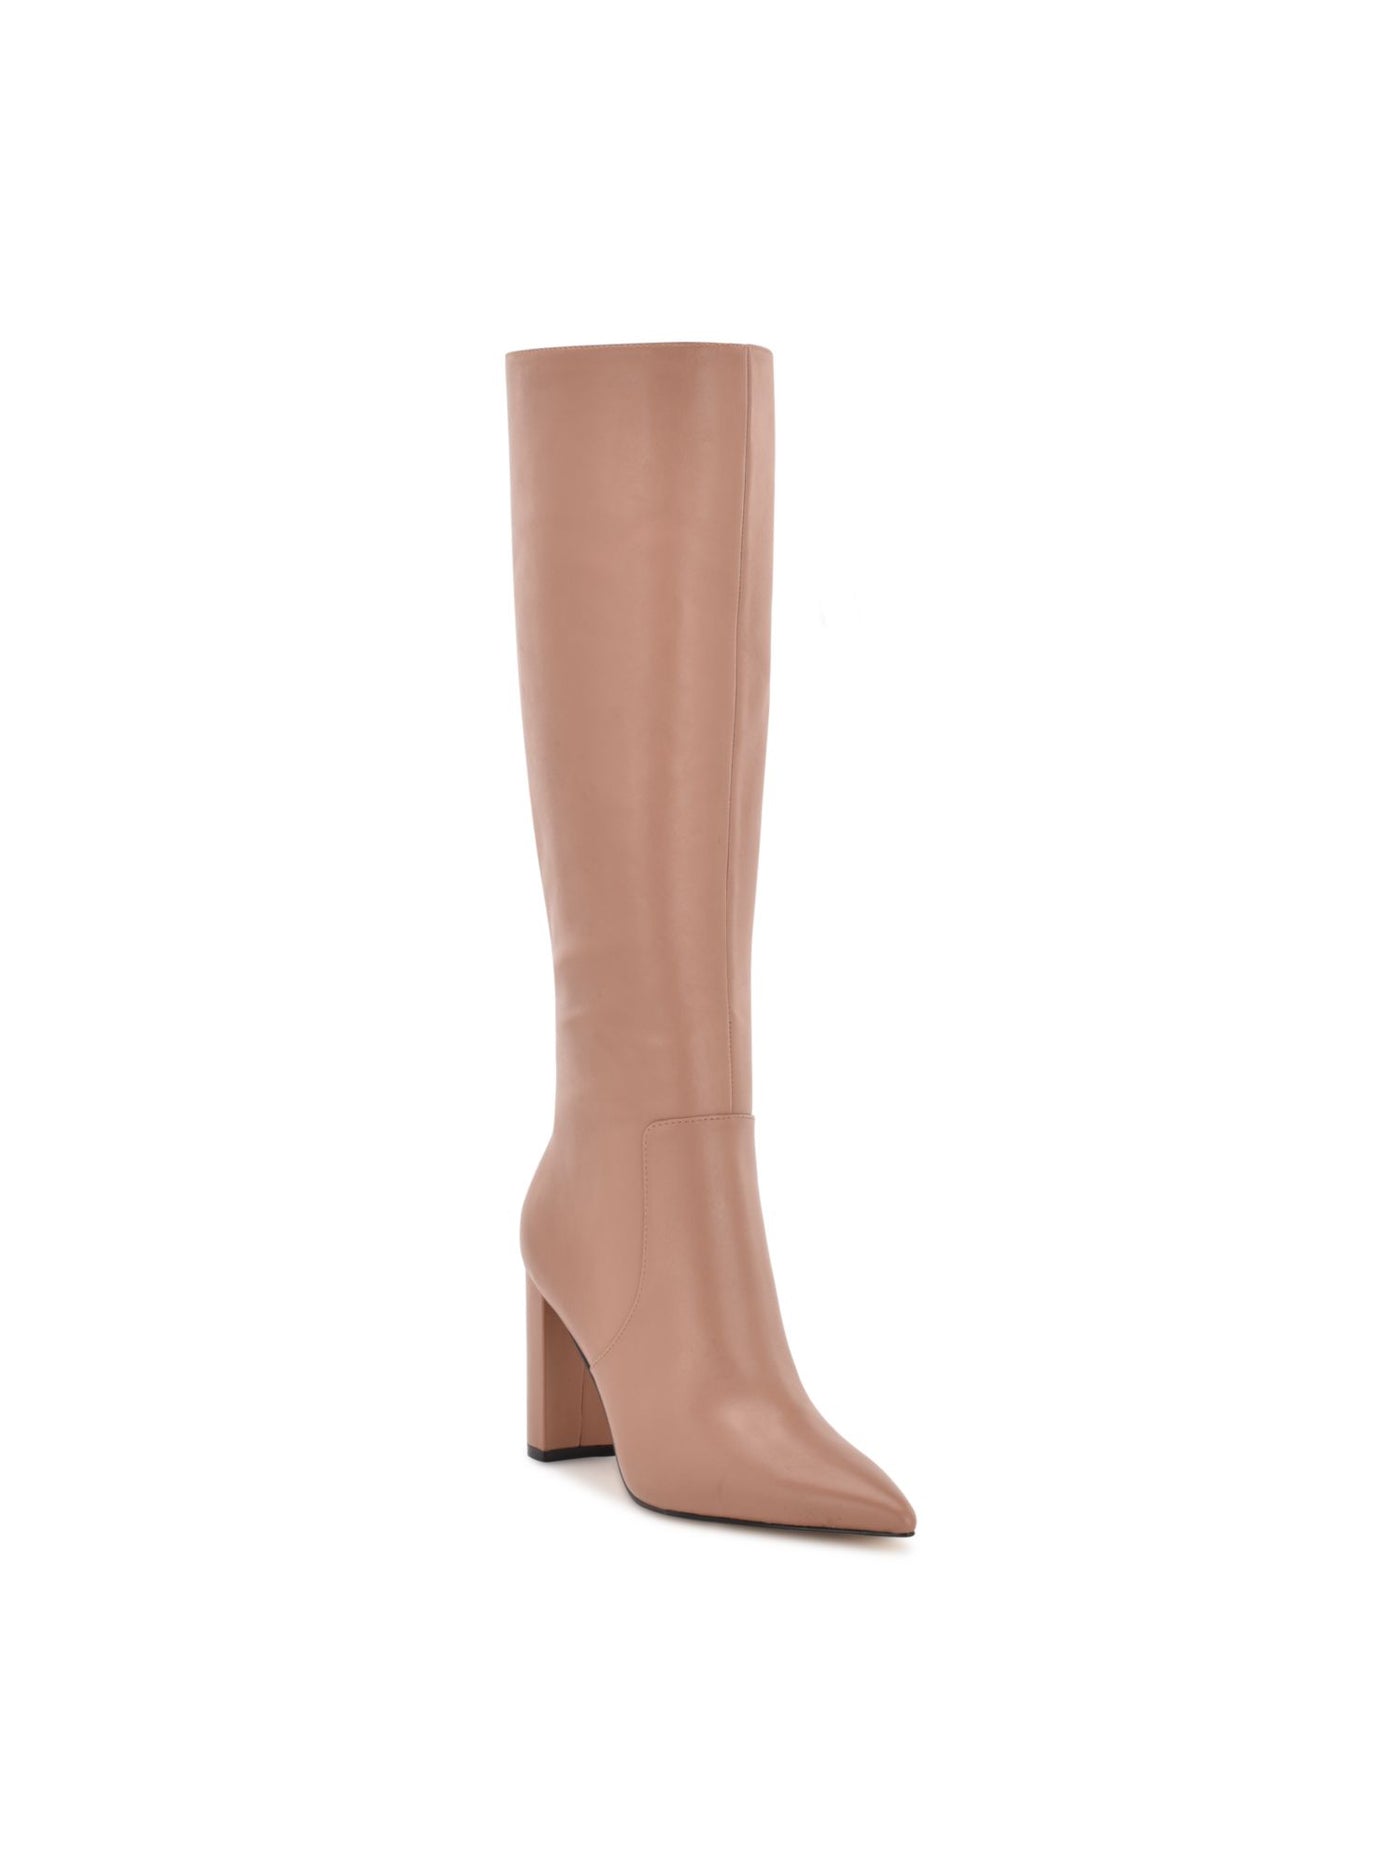 NINE WEST Womens Beige Comfort Danee Pointy Toe Block Heel Zip-Up Leather Boots Shoes 6 M